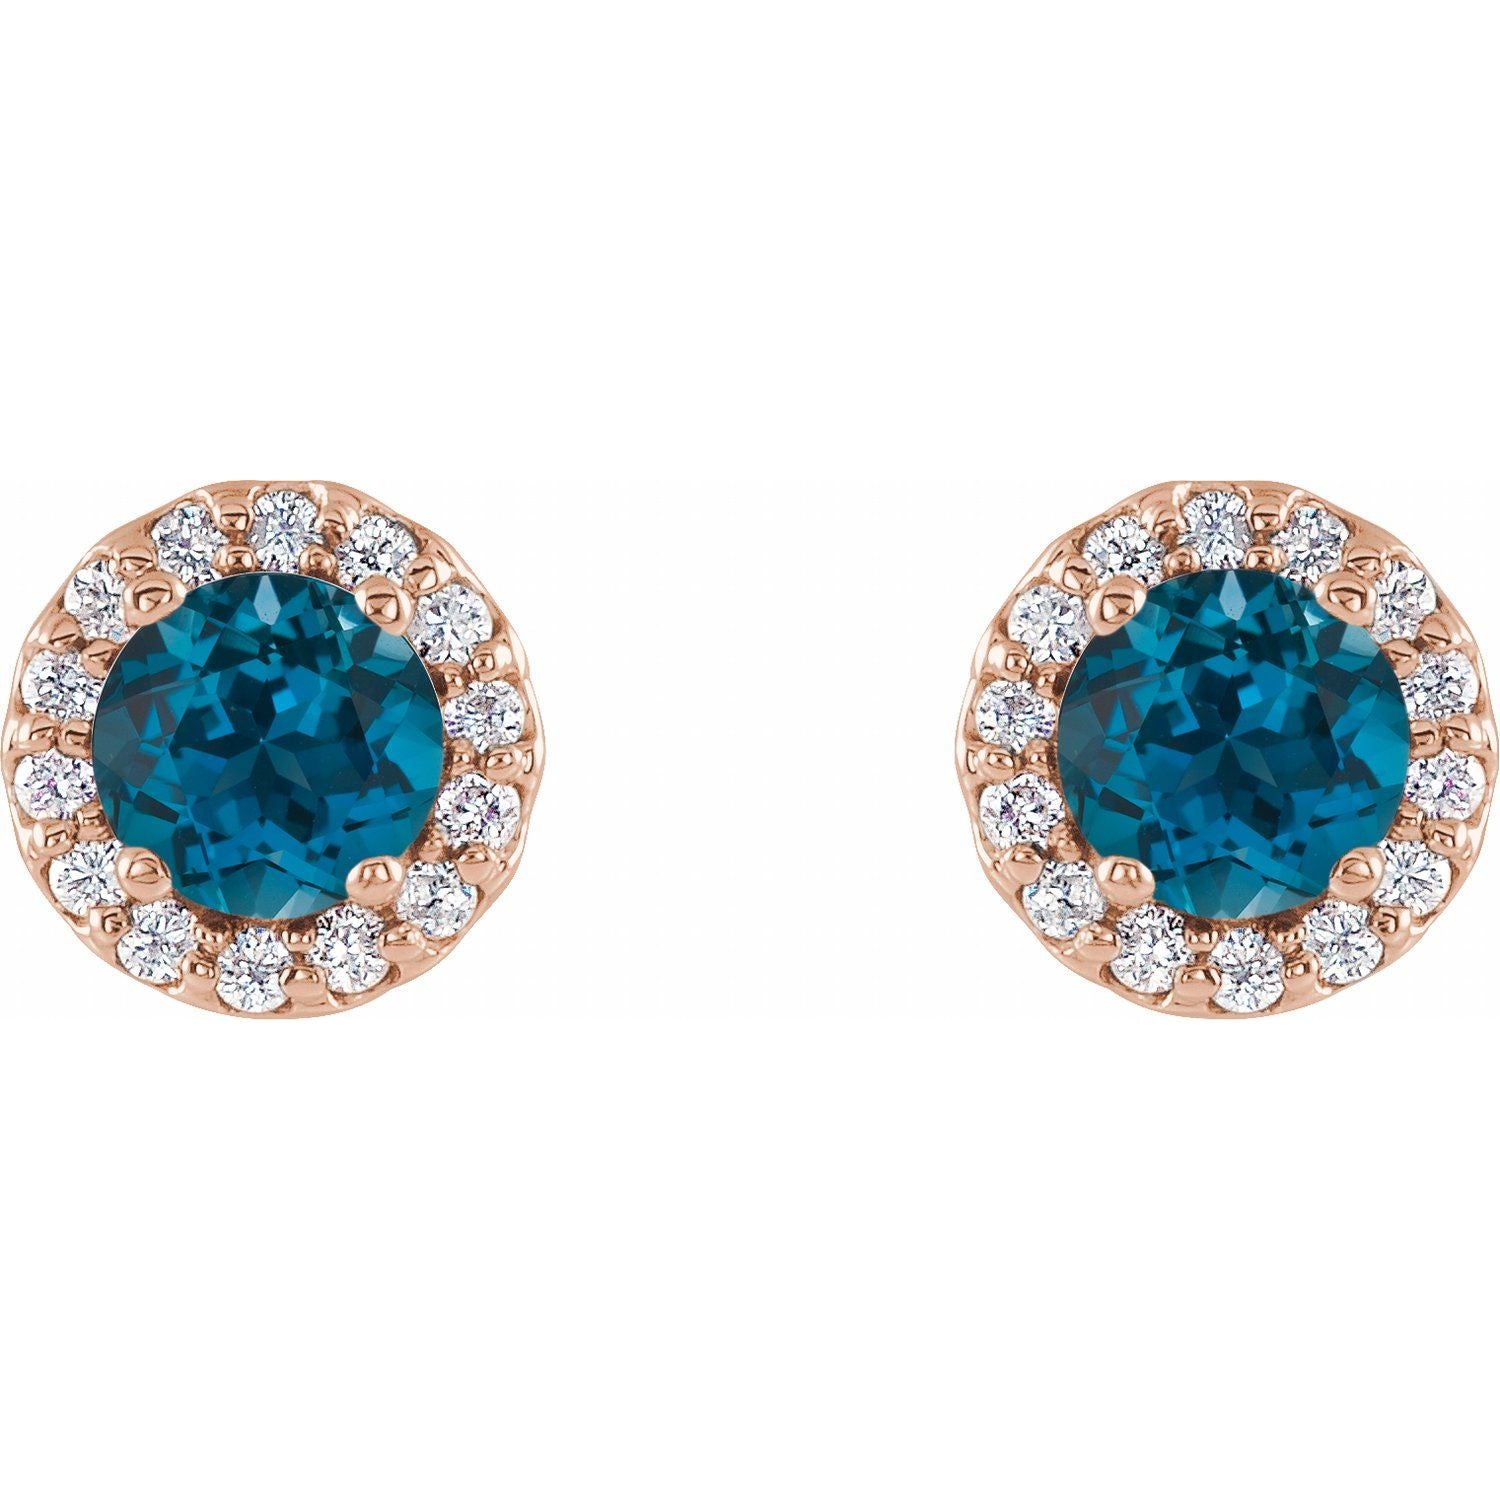 Ella London Blue Topaz Halo Diamond Earrings